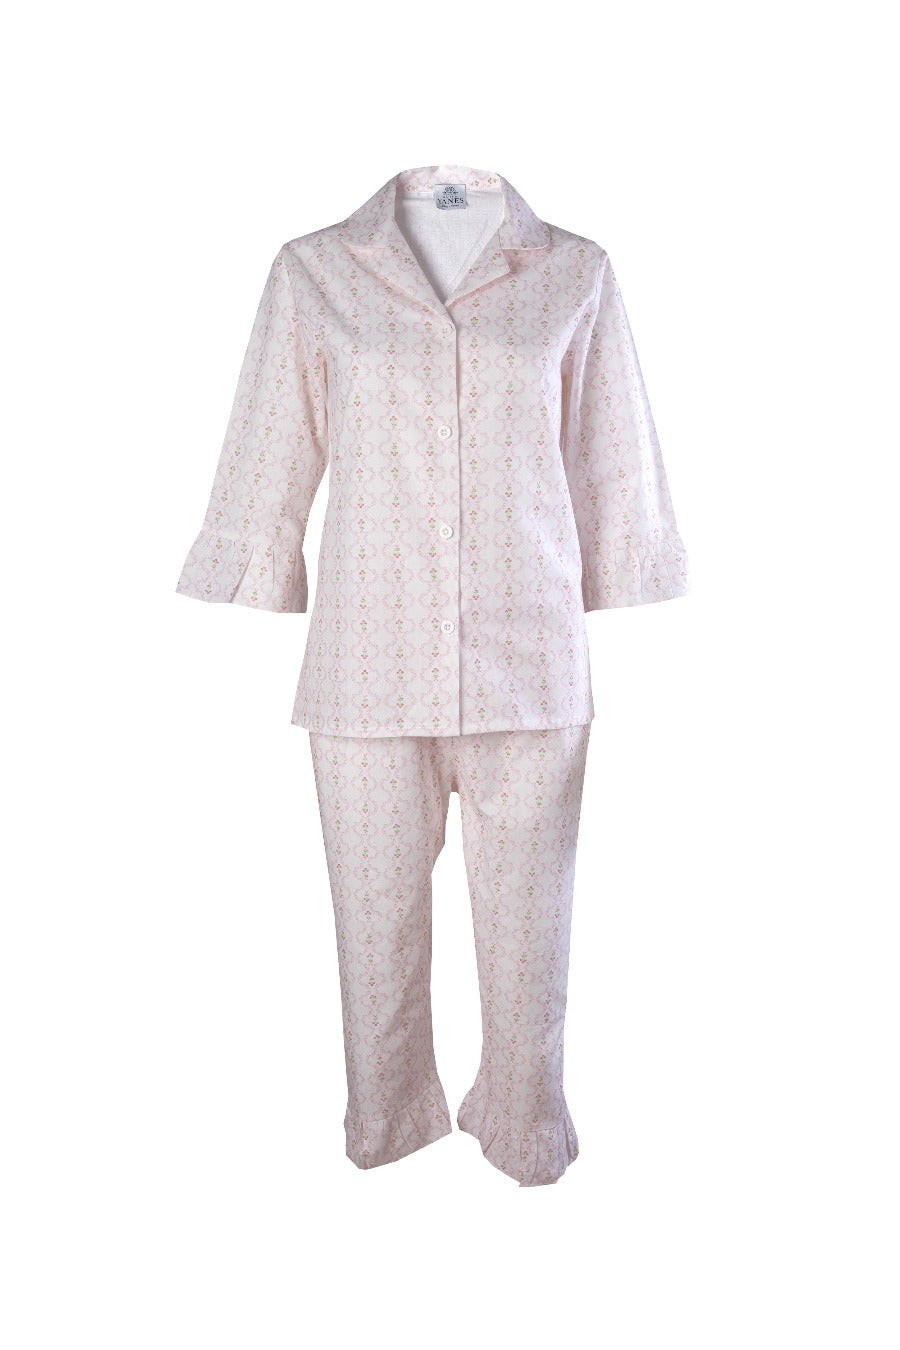 Peony Ruffle Long Women's Pajamas Set